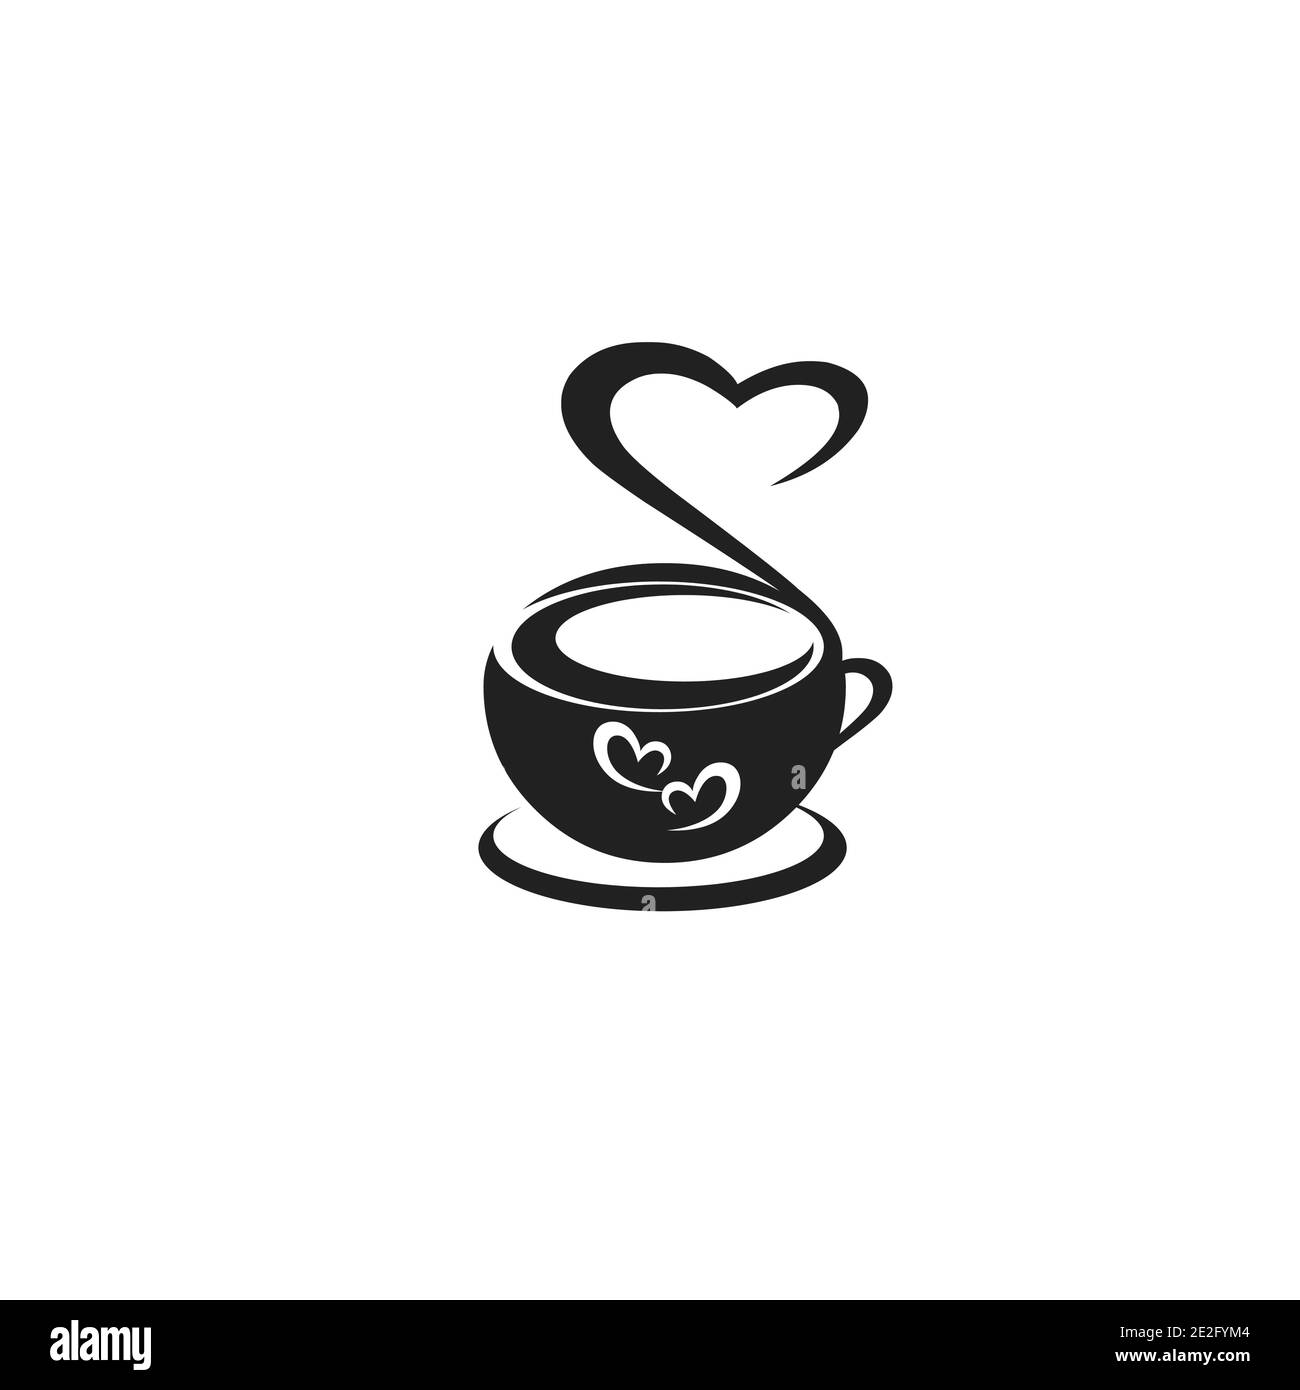 Caffetteria e caffetteria, caffè caldo e freddo, ristorante, caffetteria, design con logo Vector Illustrator. Illustrazione Vettoriale